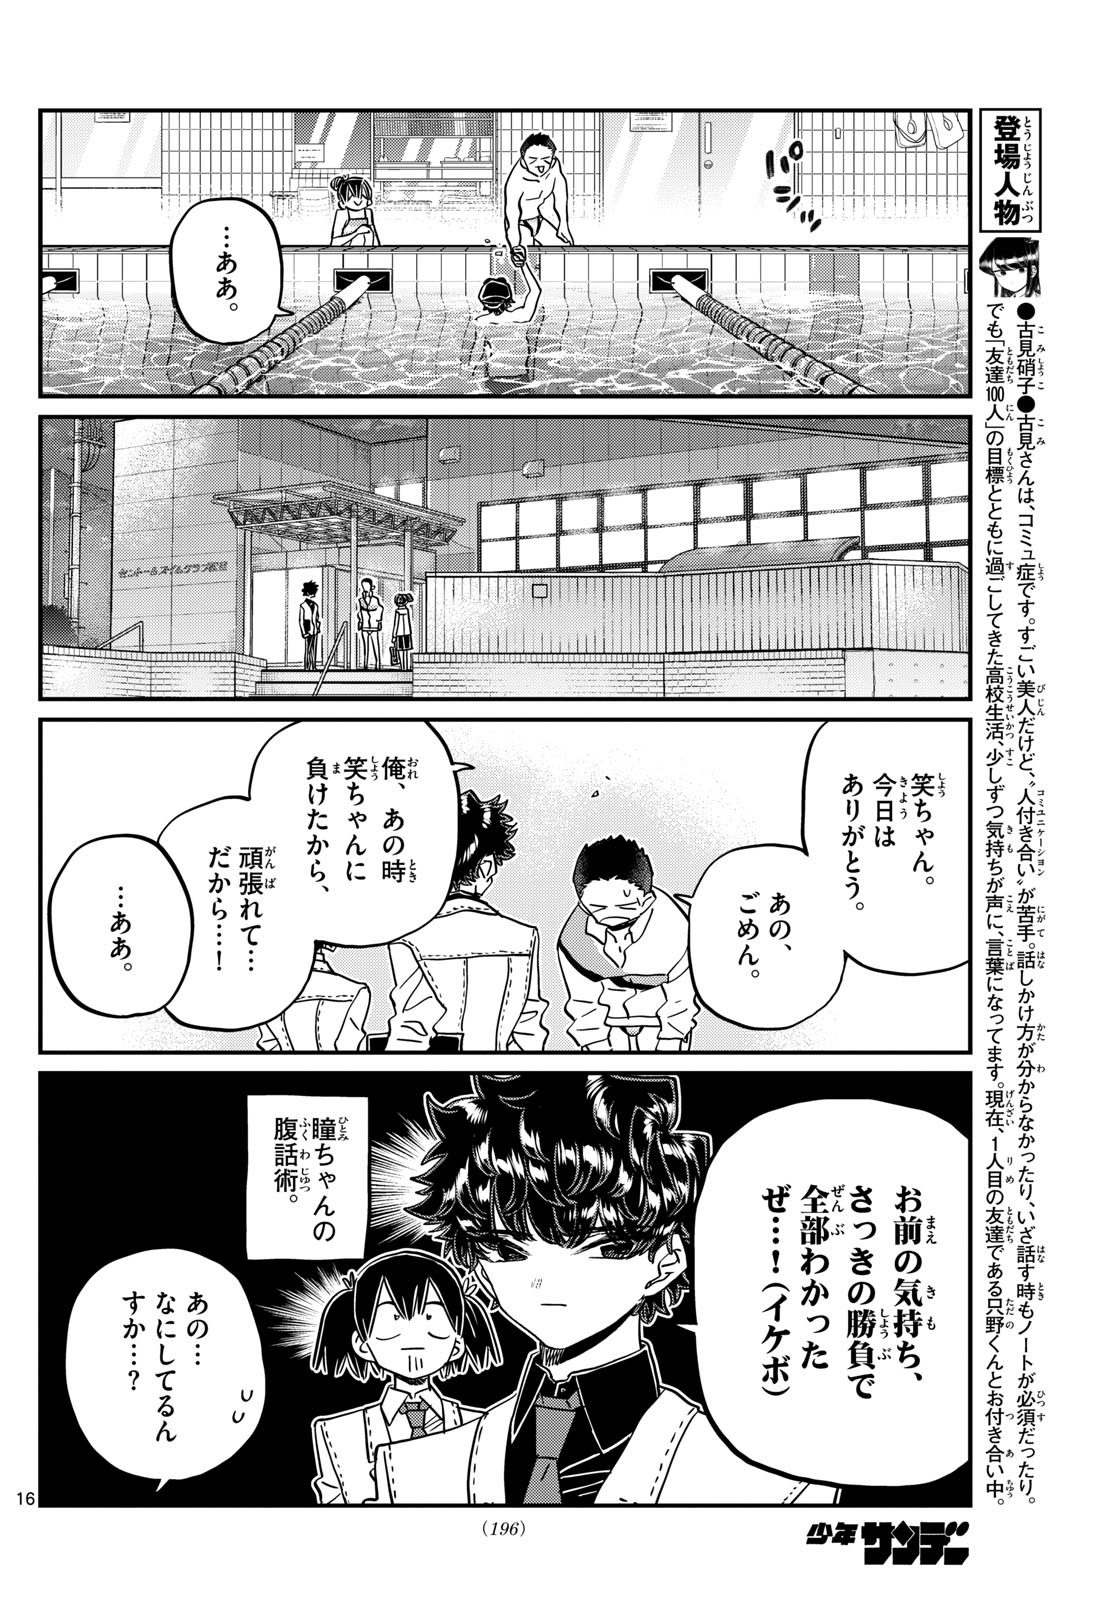 Komi-san wa Komyushou Desu - Chapter 461 - Page 16